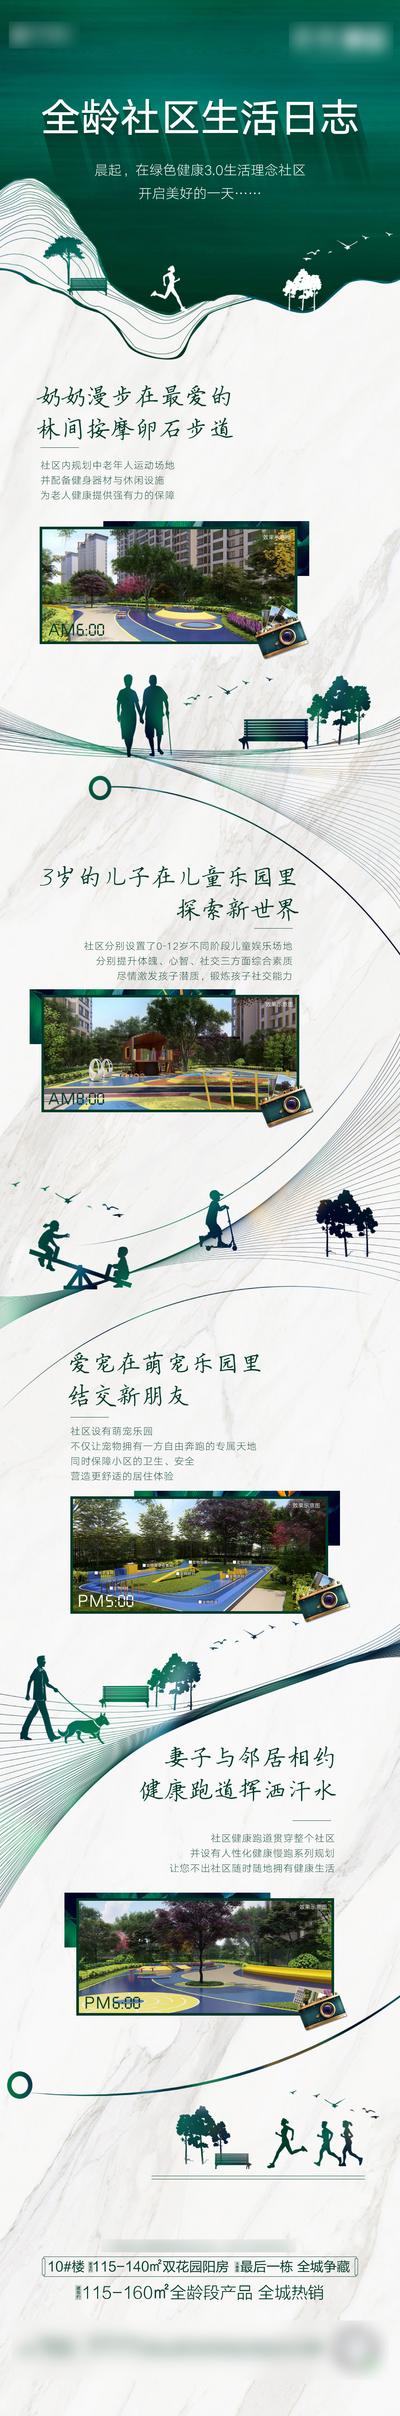 南门网 专题设计 长图 房地产 全龄社区 儿童乐园 跑道 剪影 价值点